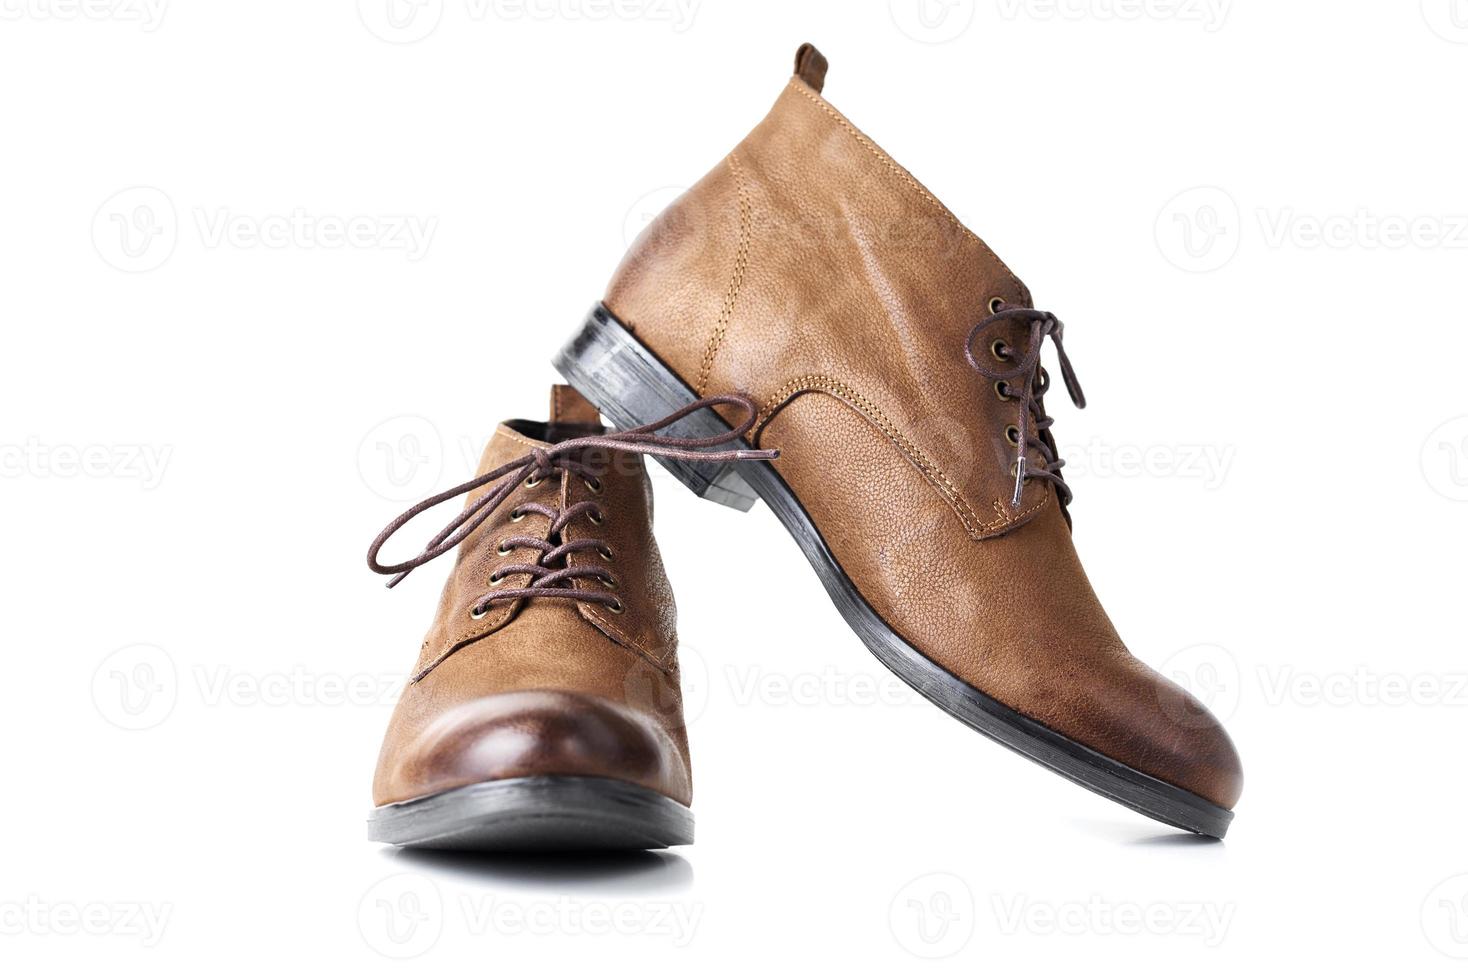 par de botas de mujer de cuero marrón en el fondo blanco aislado foto